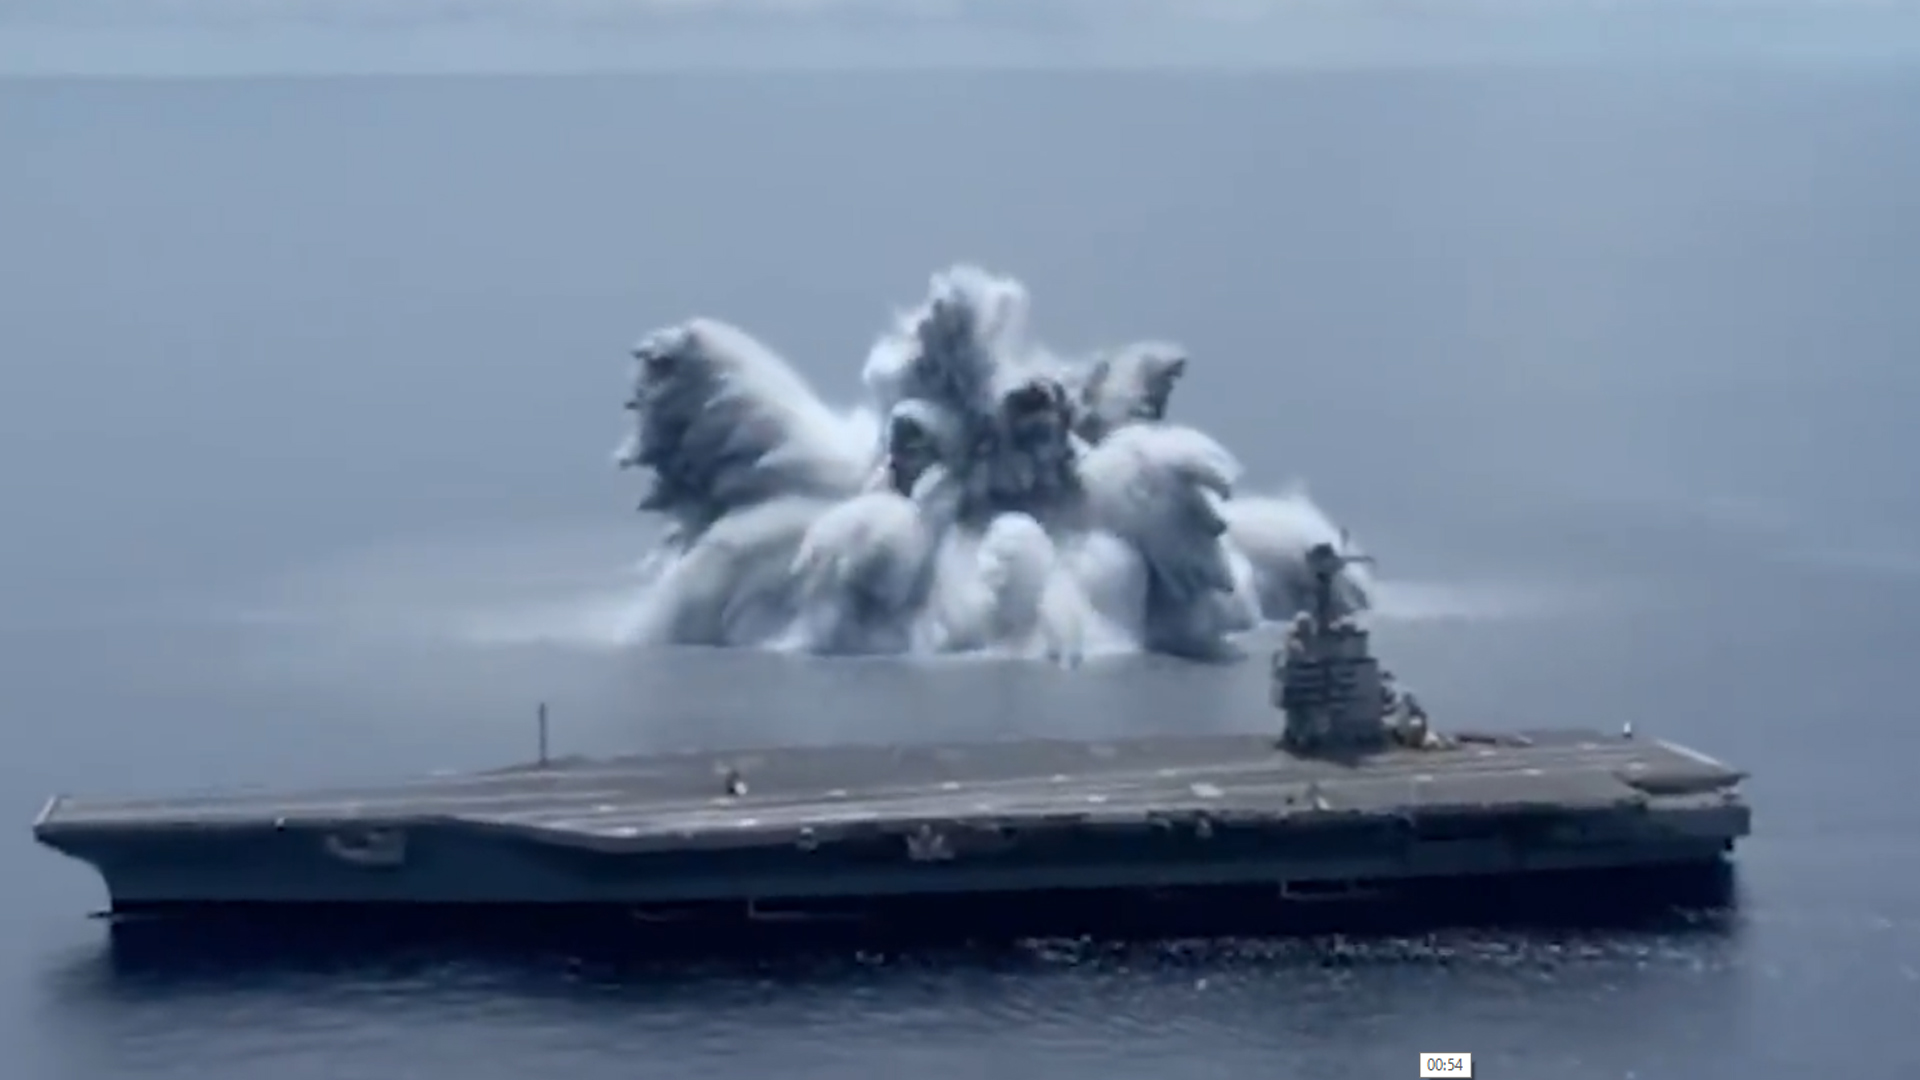 AS Lakukan Uji Coba Kejut pada Kapal Induk dengan Ledakan Berkekuatan Setara Gempa 3,9 SR